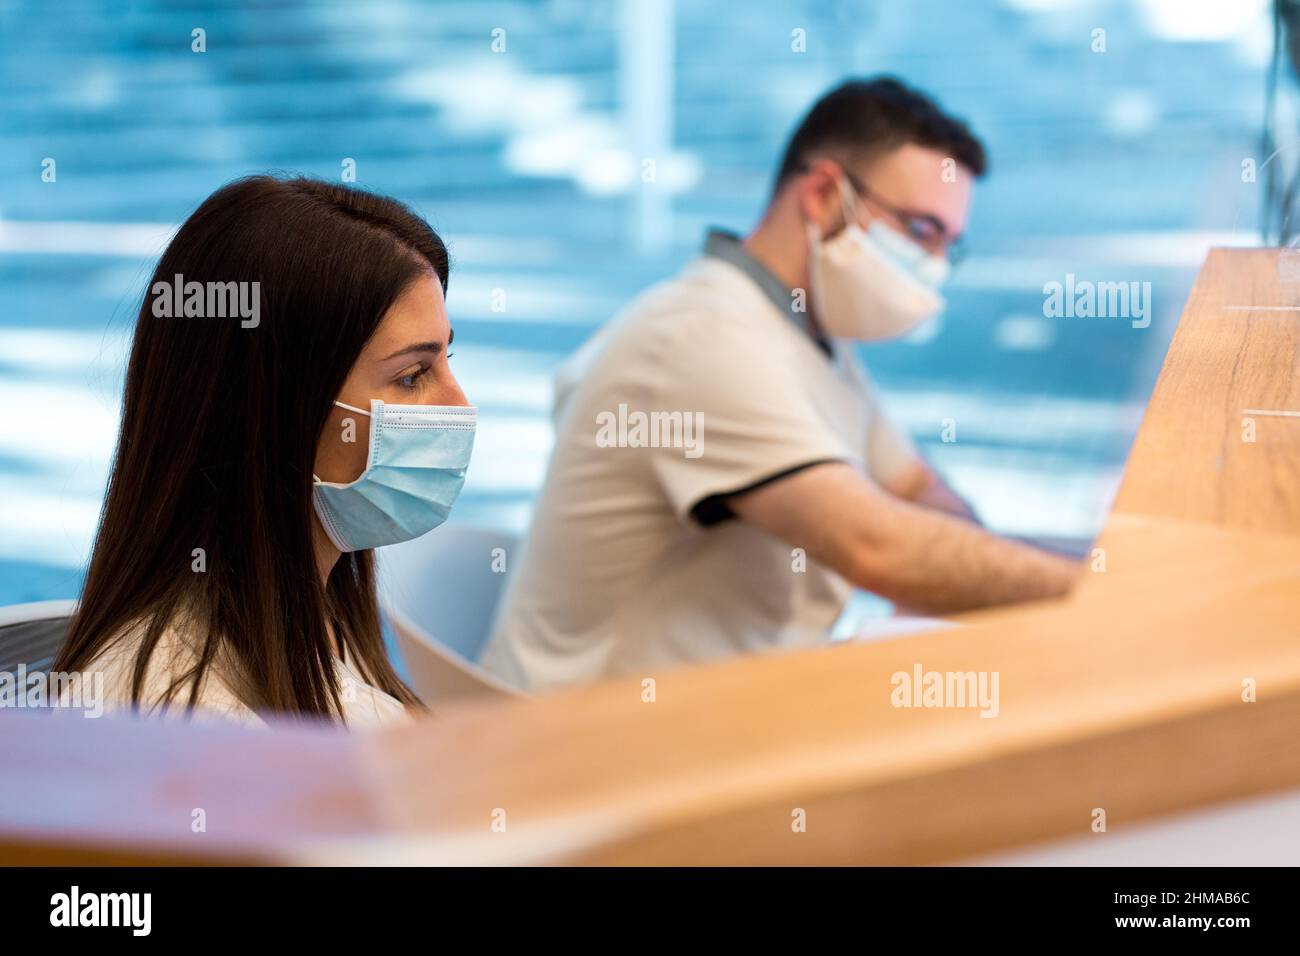 Zwei Personen trugen eine Gesichtsmaske, während sie an der Rezeption eines medizinischen Zentrums arbeiteten. Stockfoto